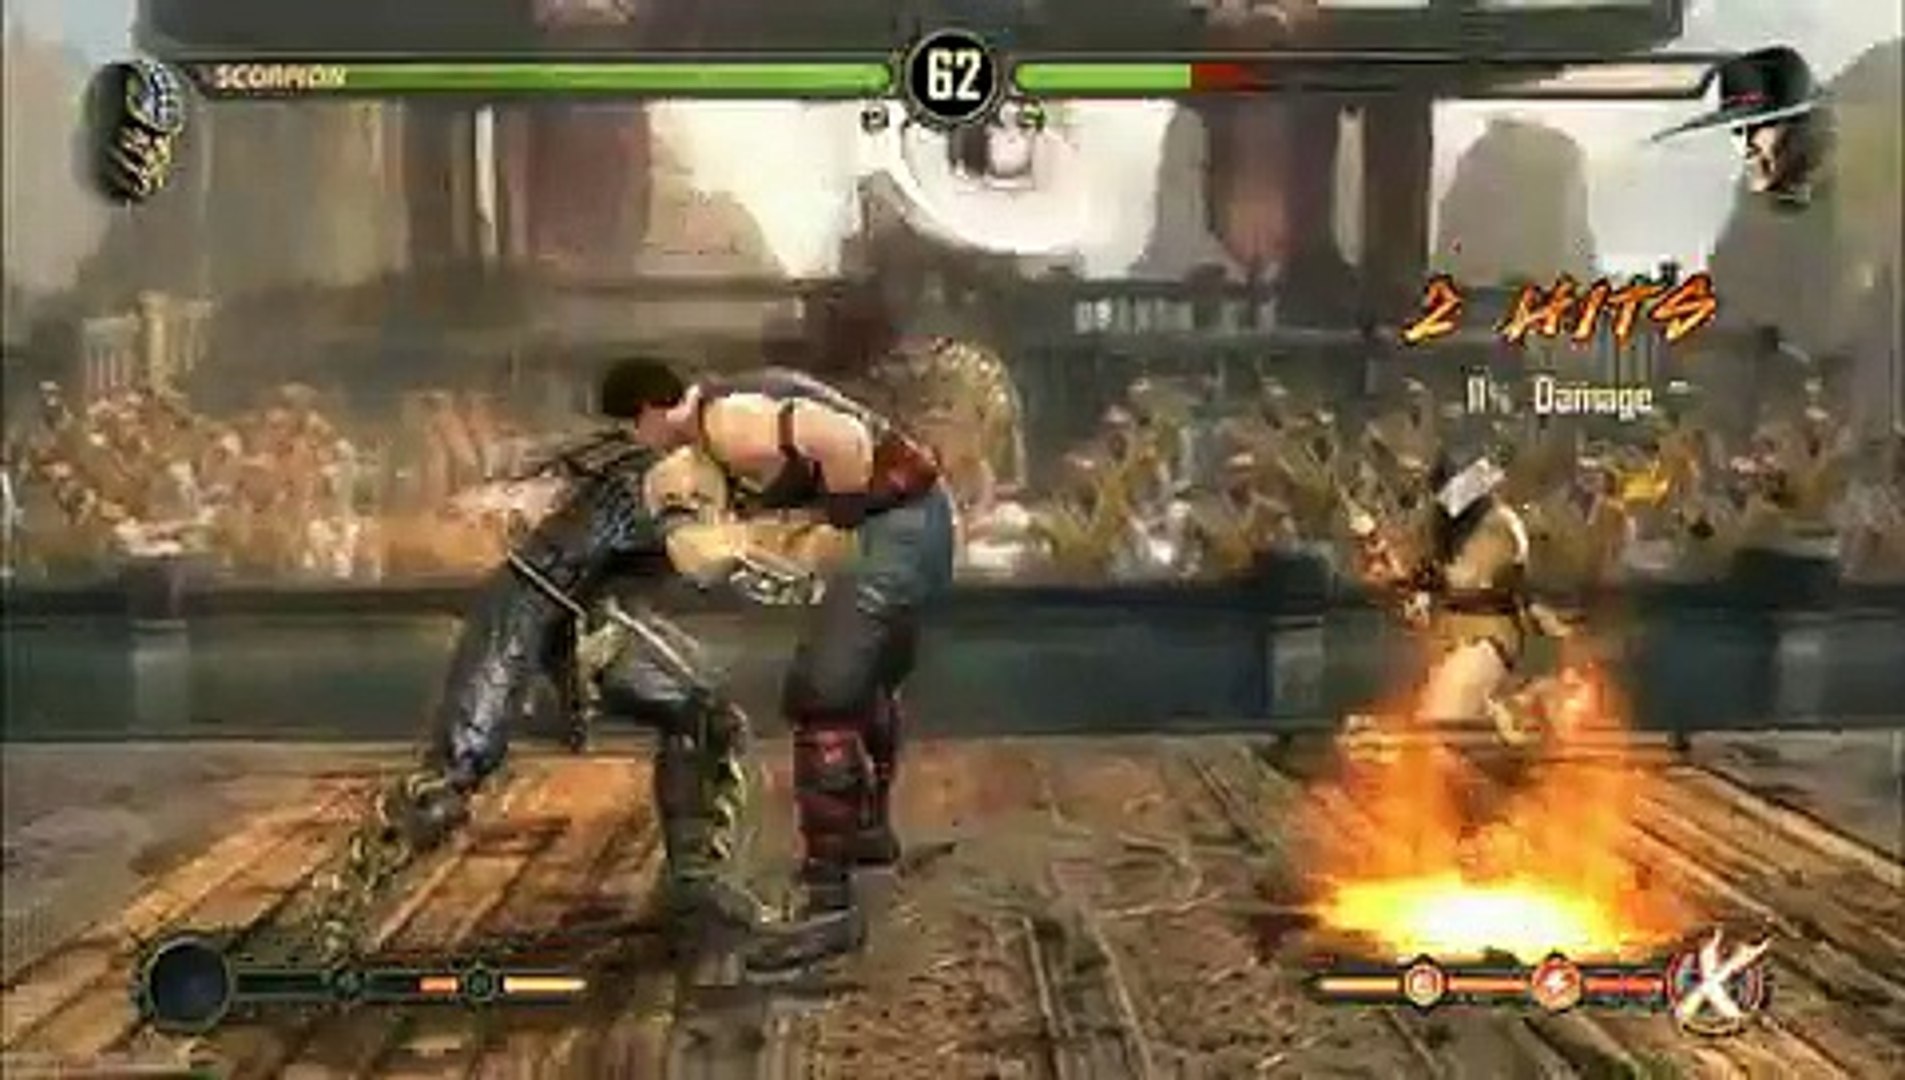 Mortal Kombat 2011 PlayStation 3 Review/Gameplay